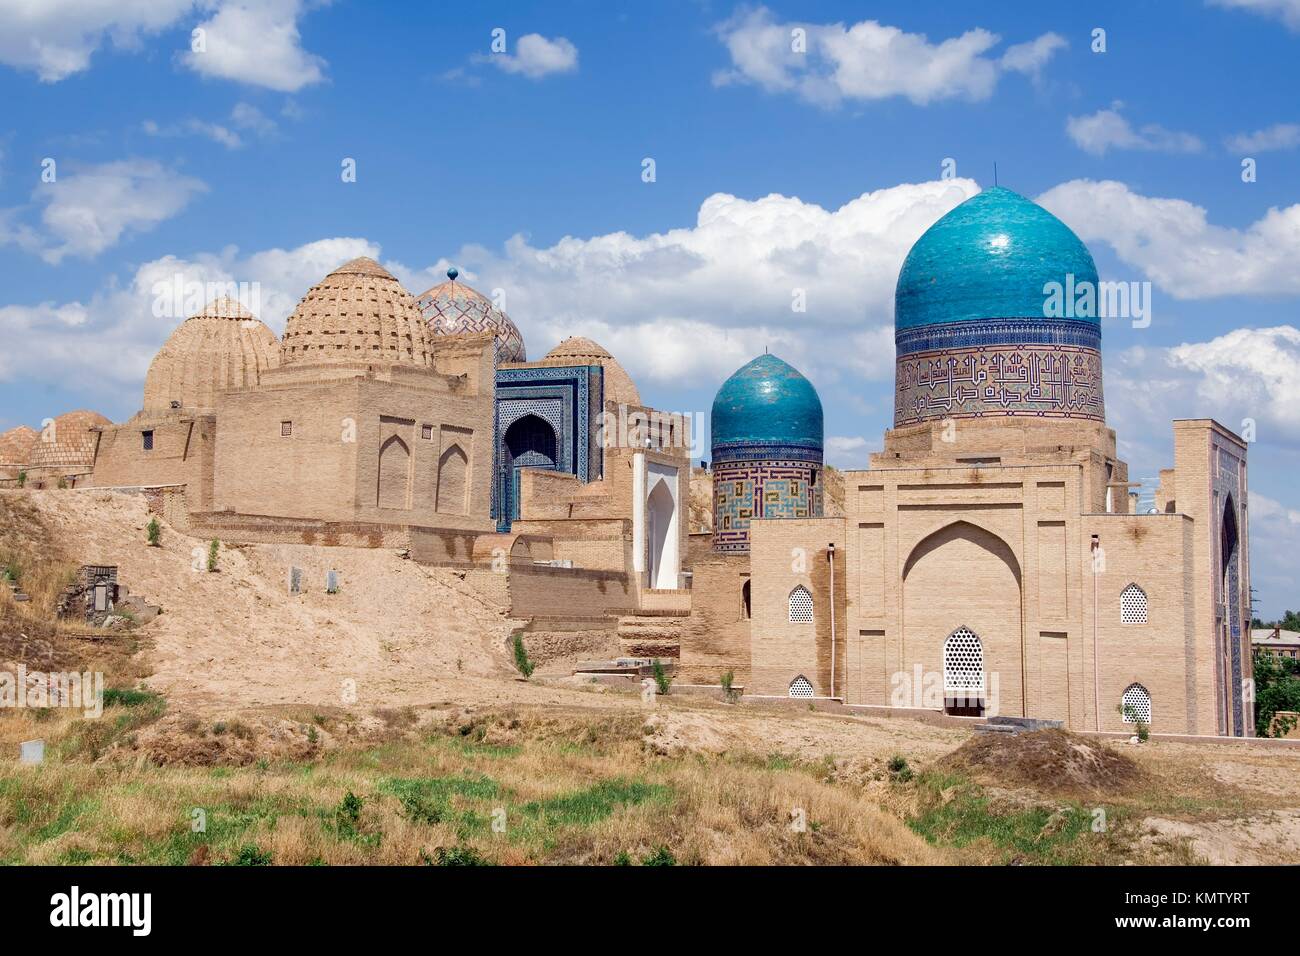 Kasisade Rumi Mausoleum, Shahr-I-Zindah Shahi Sinda necropolis, Samarkand, Uzbekistan, UNESCO World Heritage Site Stock Photo